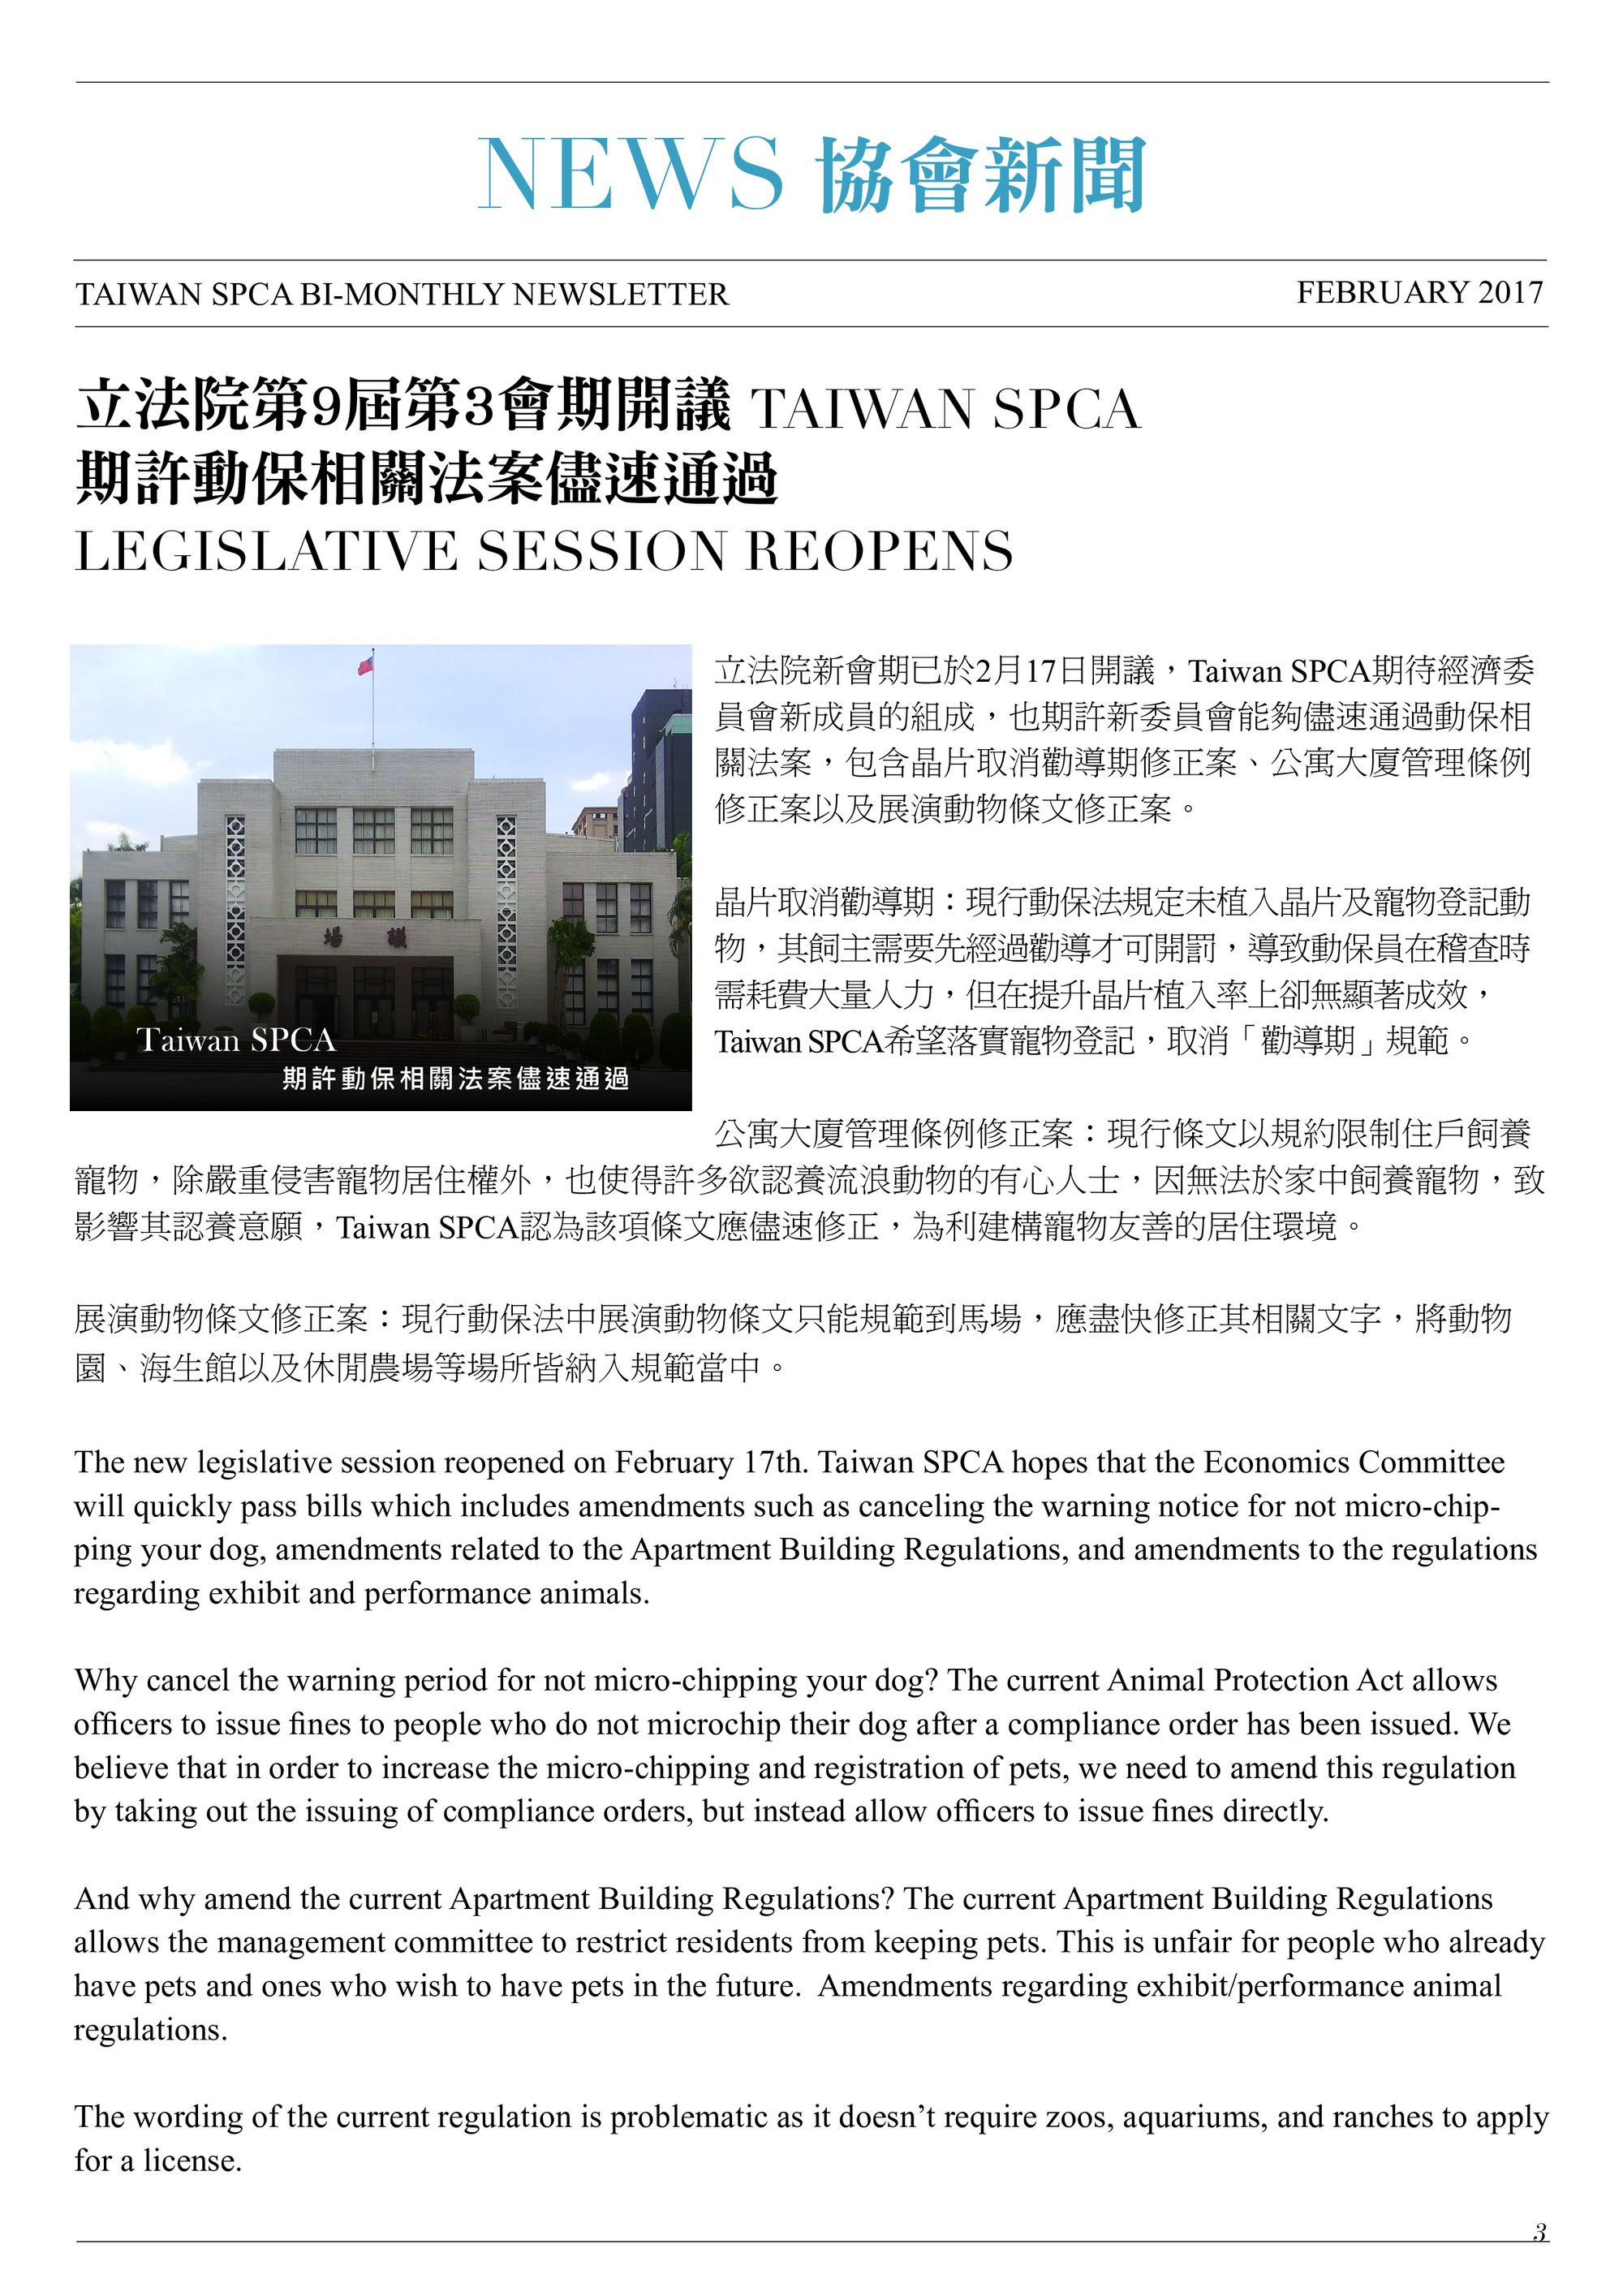 立法院第9屆第3會期開議 TAIWAN SPCA 期許動保相關法案儘速通過